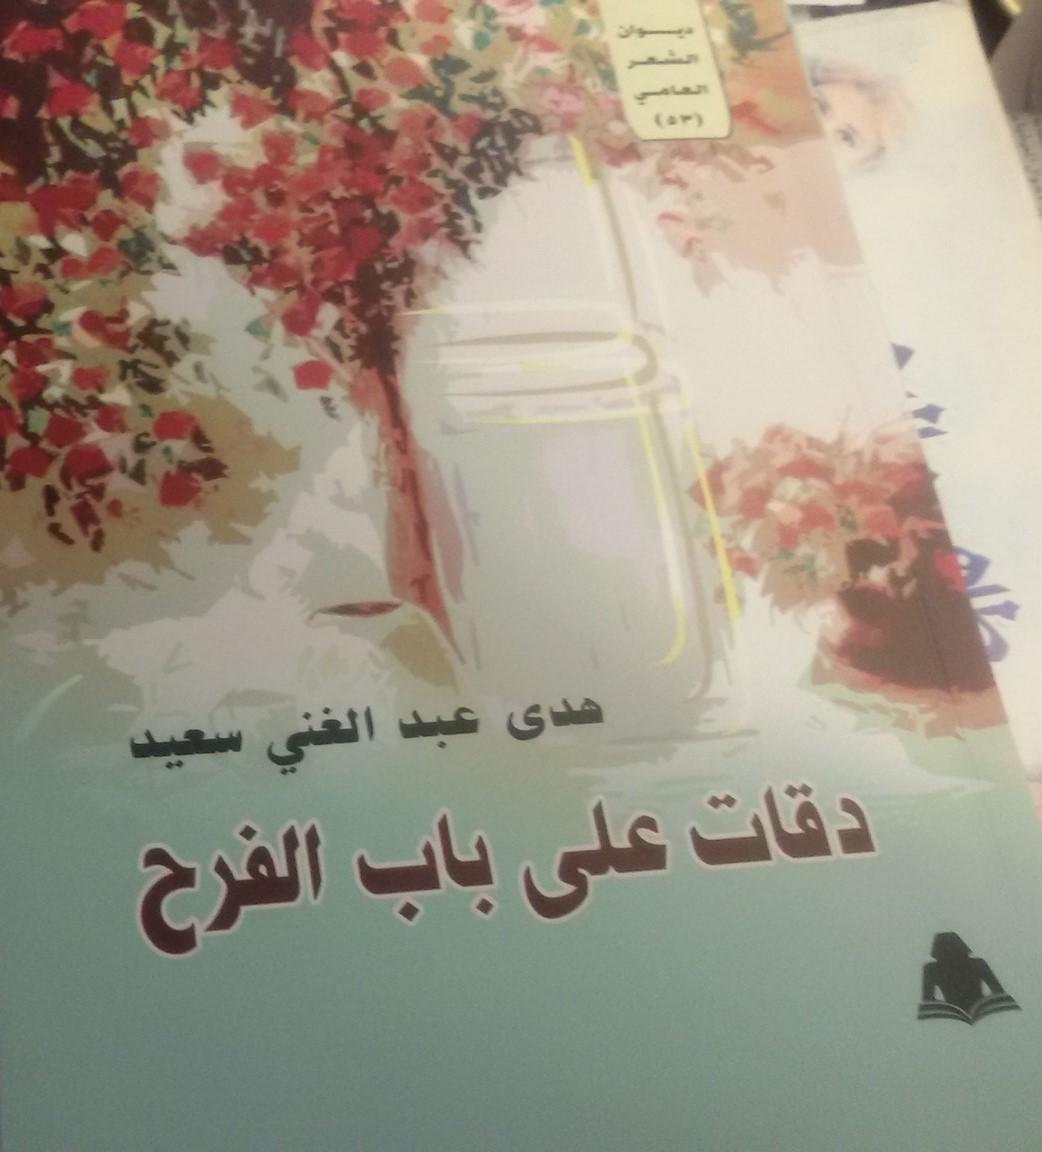   صدور ديوان«دقات على باب الفرح» للشاعرة هدى عبد الغنى